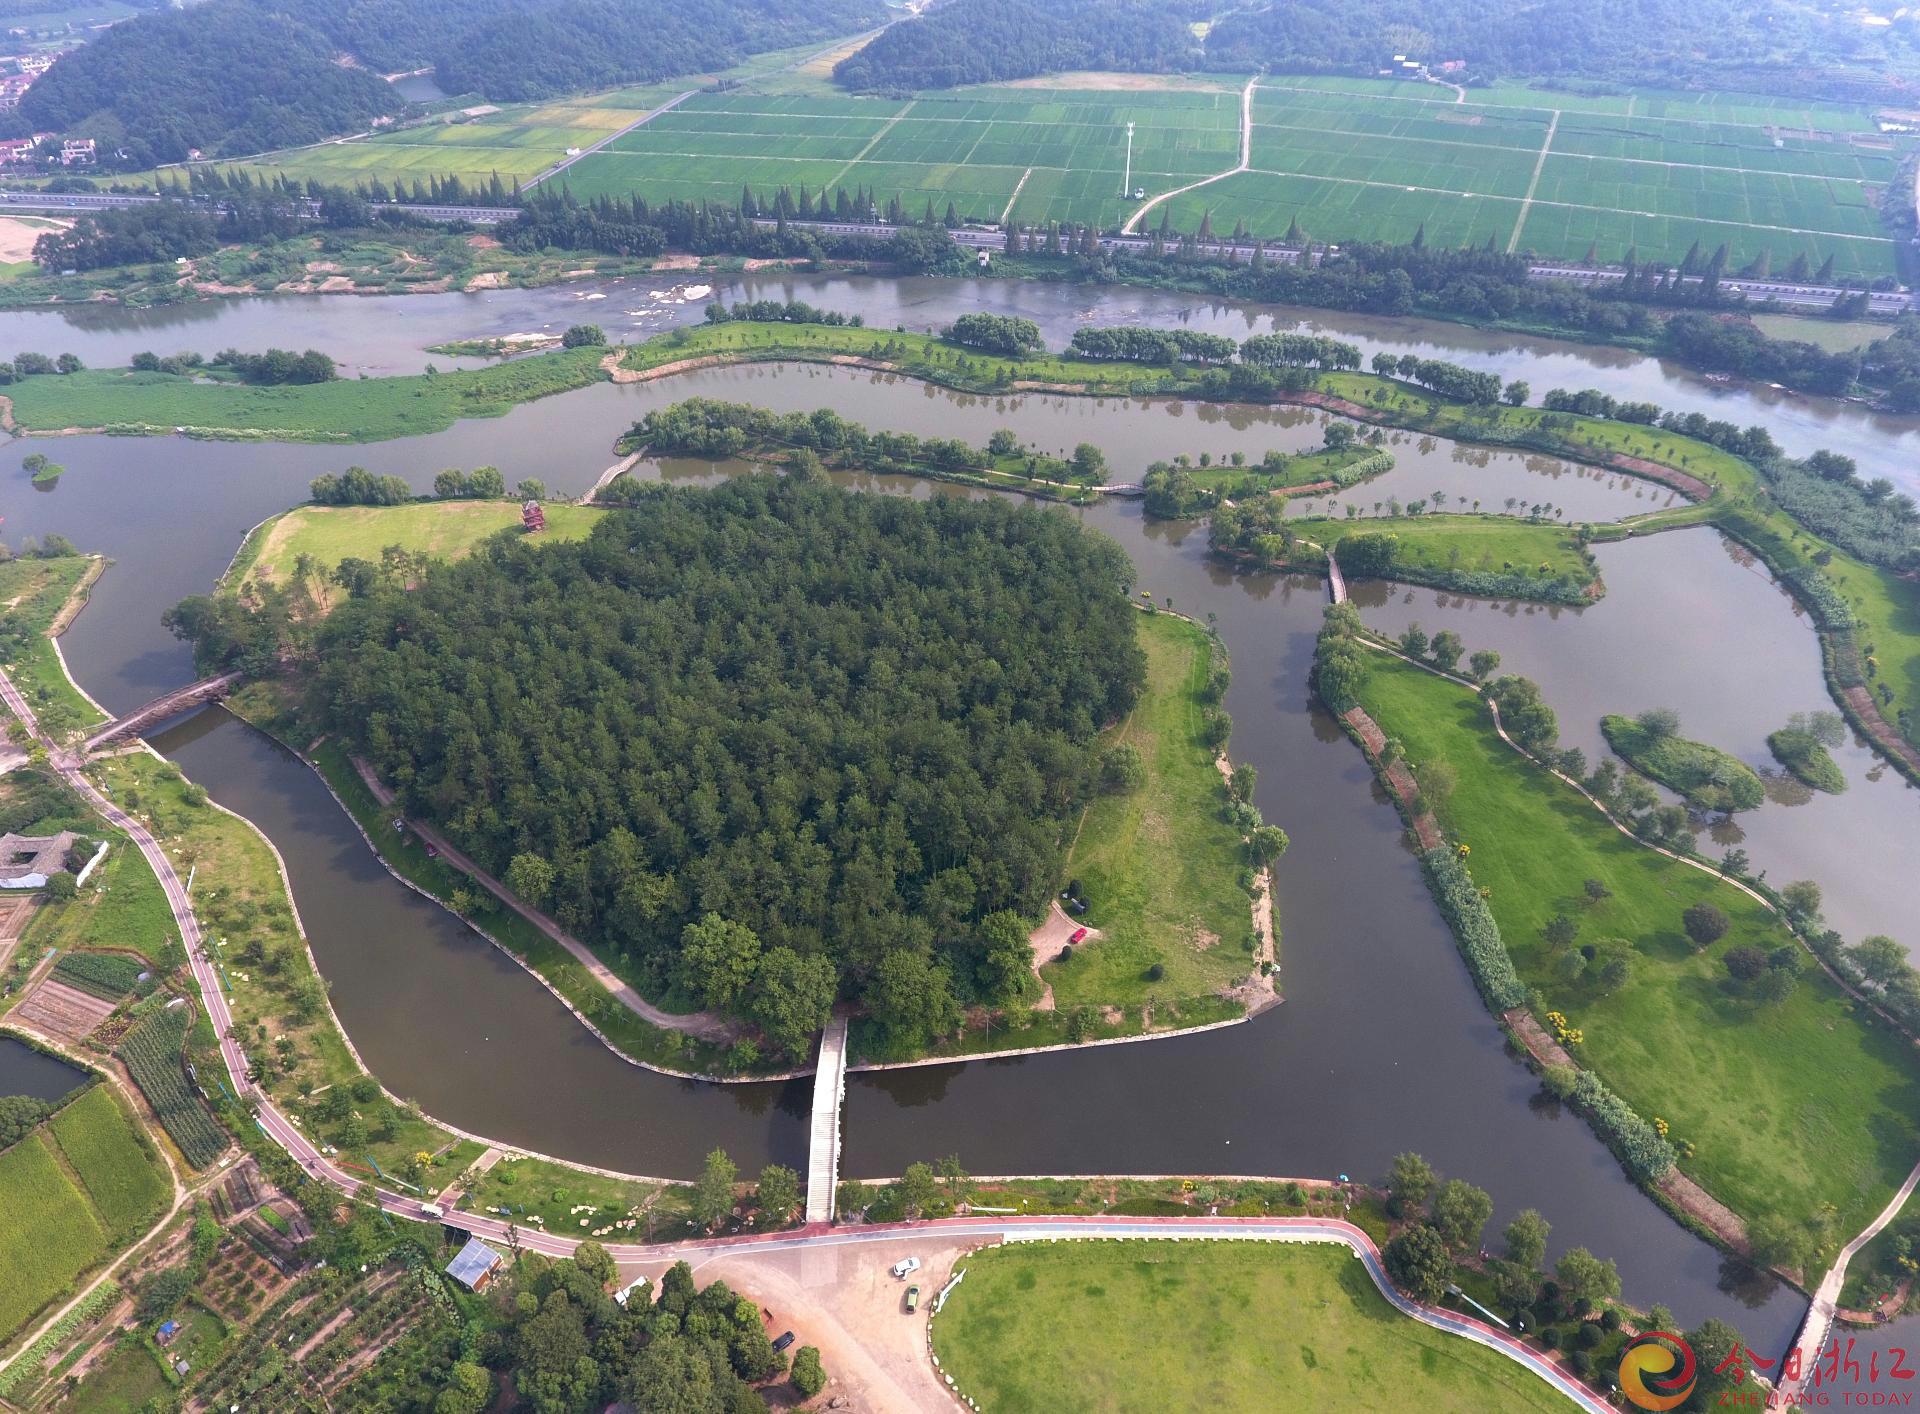 9月12日，虽值初秋时节，但俯瞰武义县履坦生态湿地公园，林水相间、小桥流水、鸟语花香，满目生机。